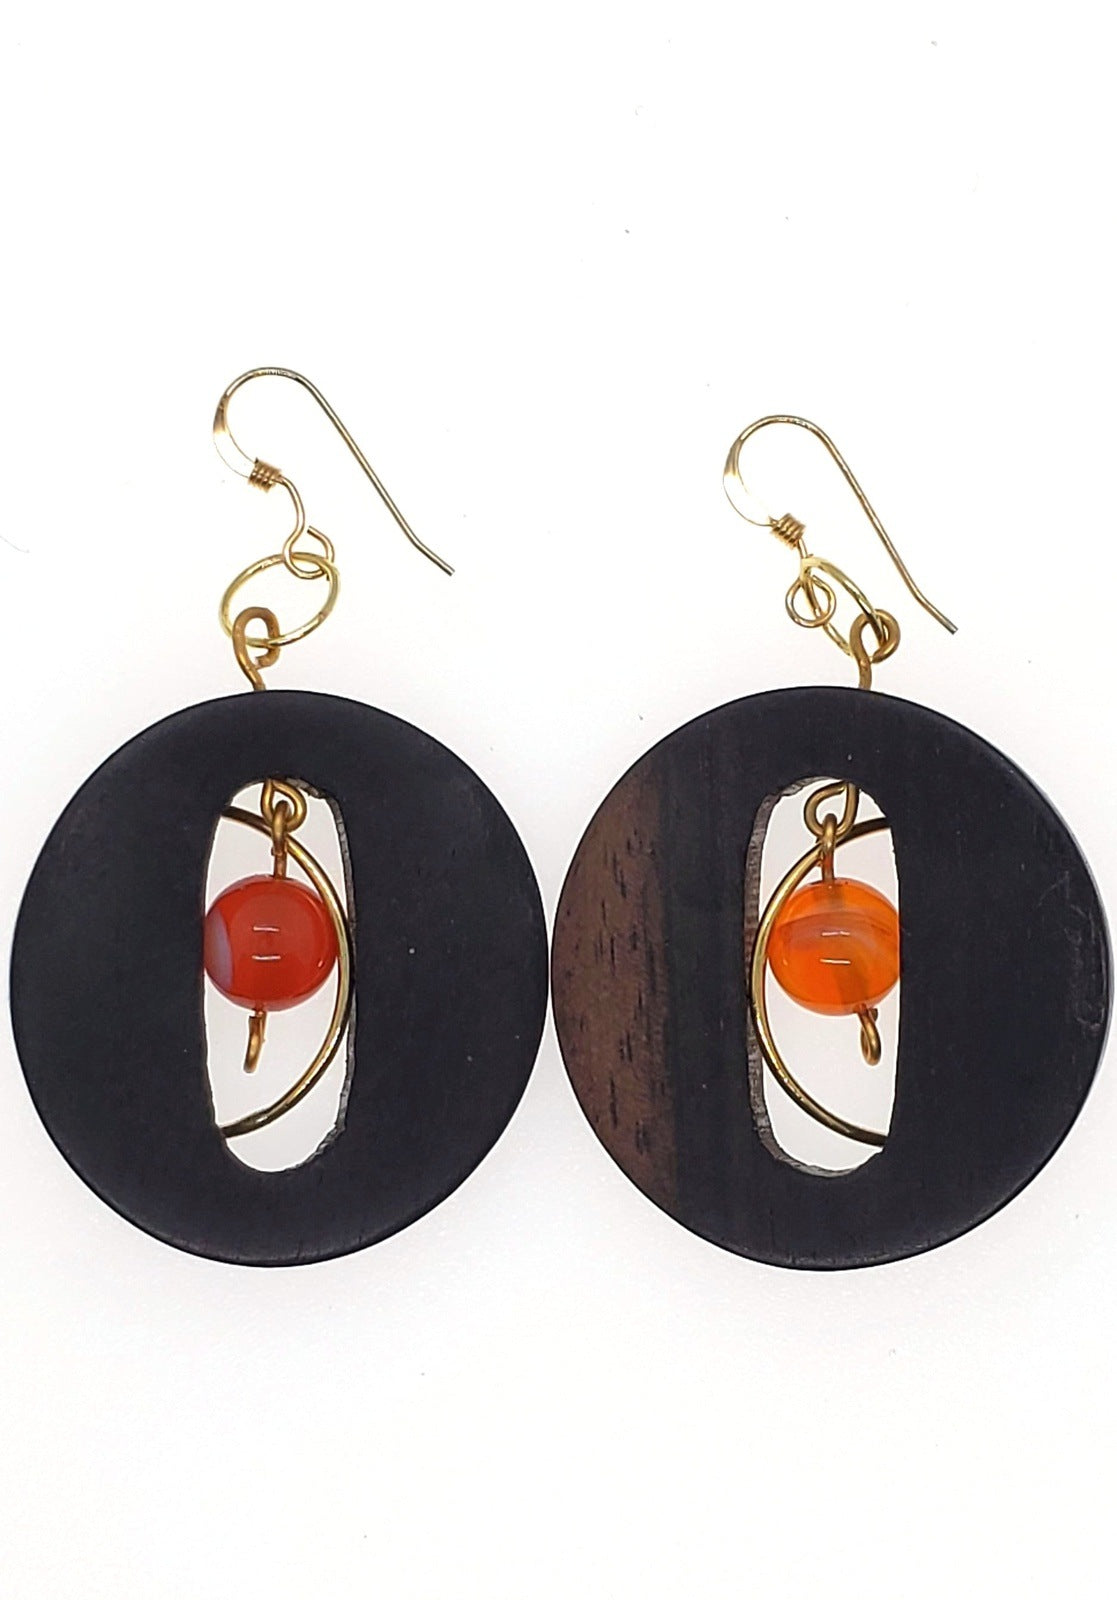 Wooden earrings for women, Ebony Wood Drop Earrings, Handmade earrings, Photo of wooden earrings on white background